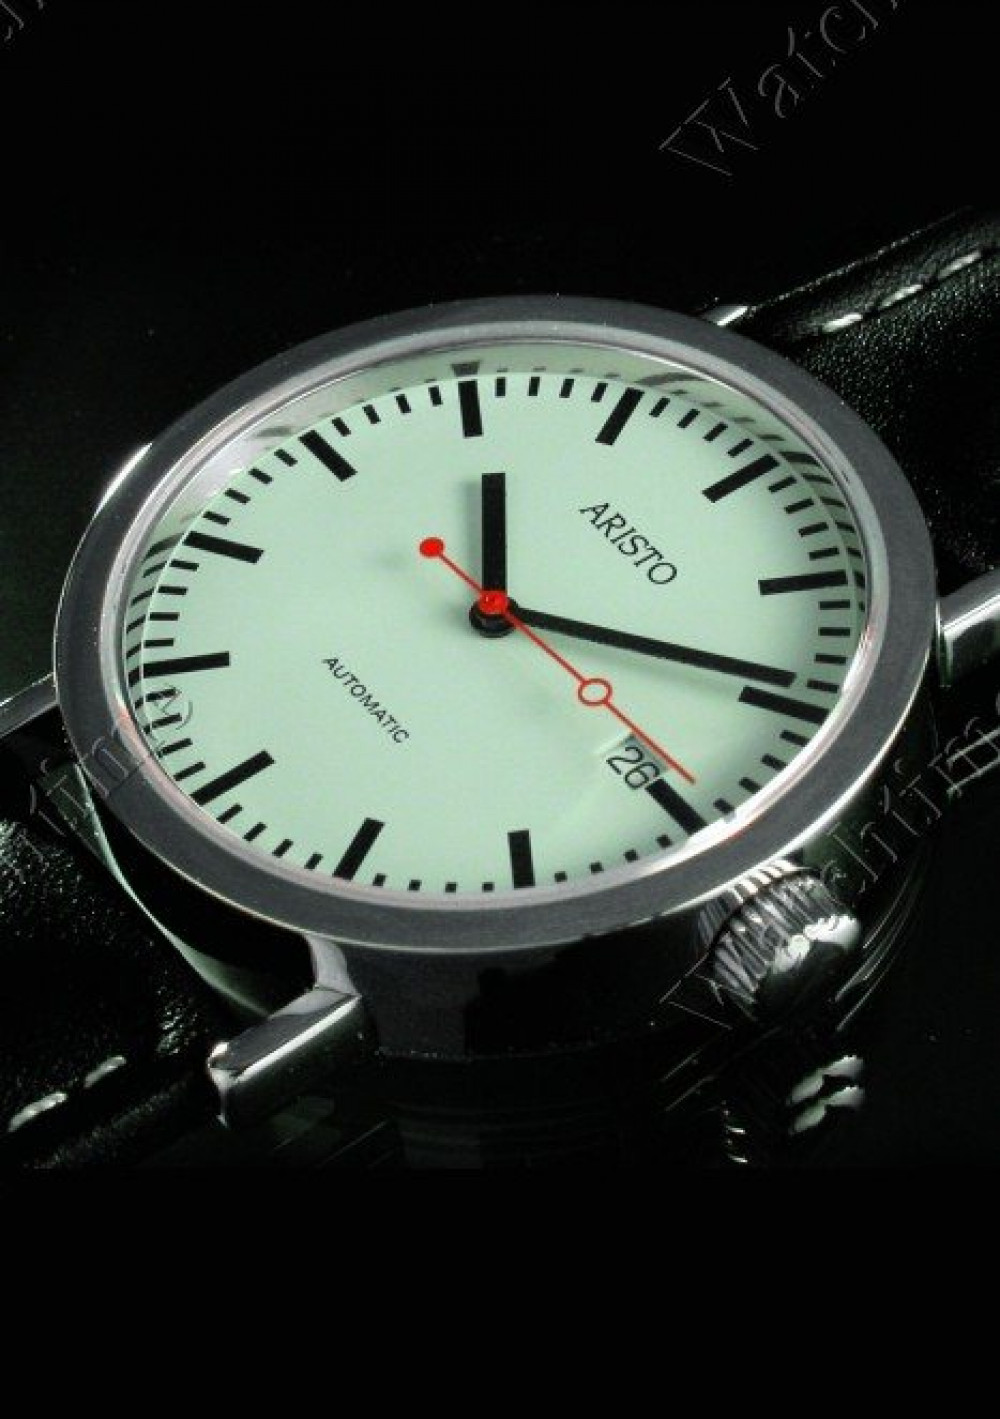 Zegarek firmy Aristo, model Pforzheimer Bahnhofsuhr